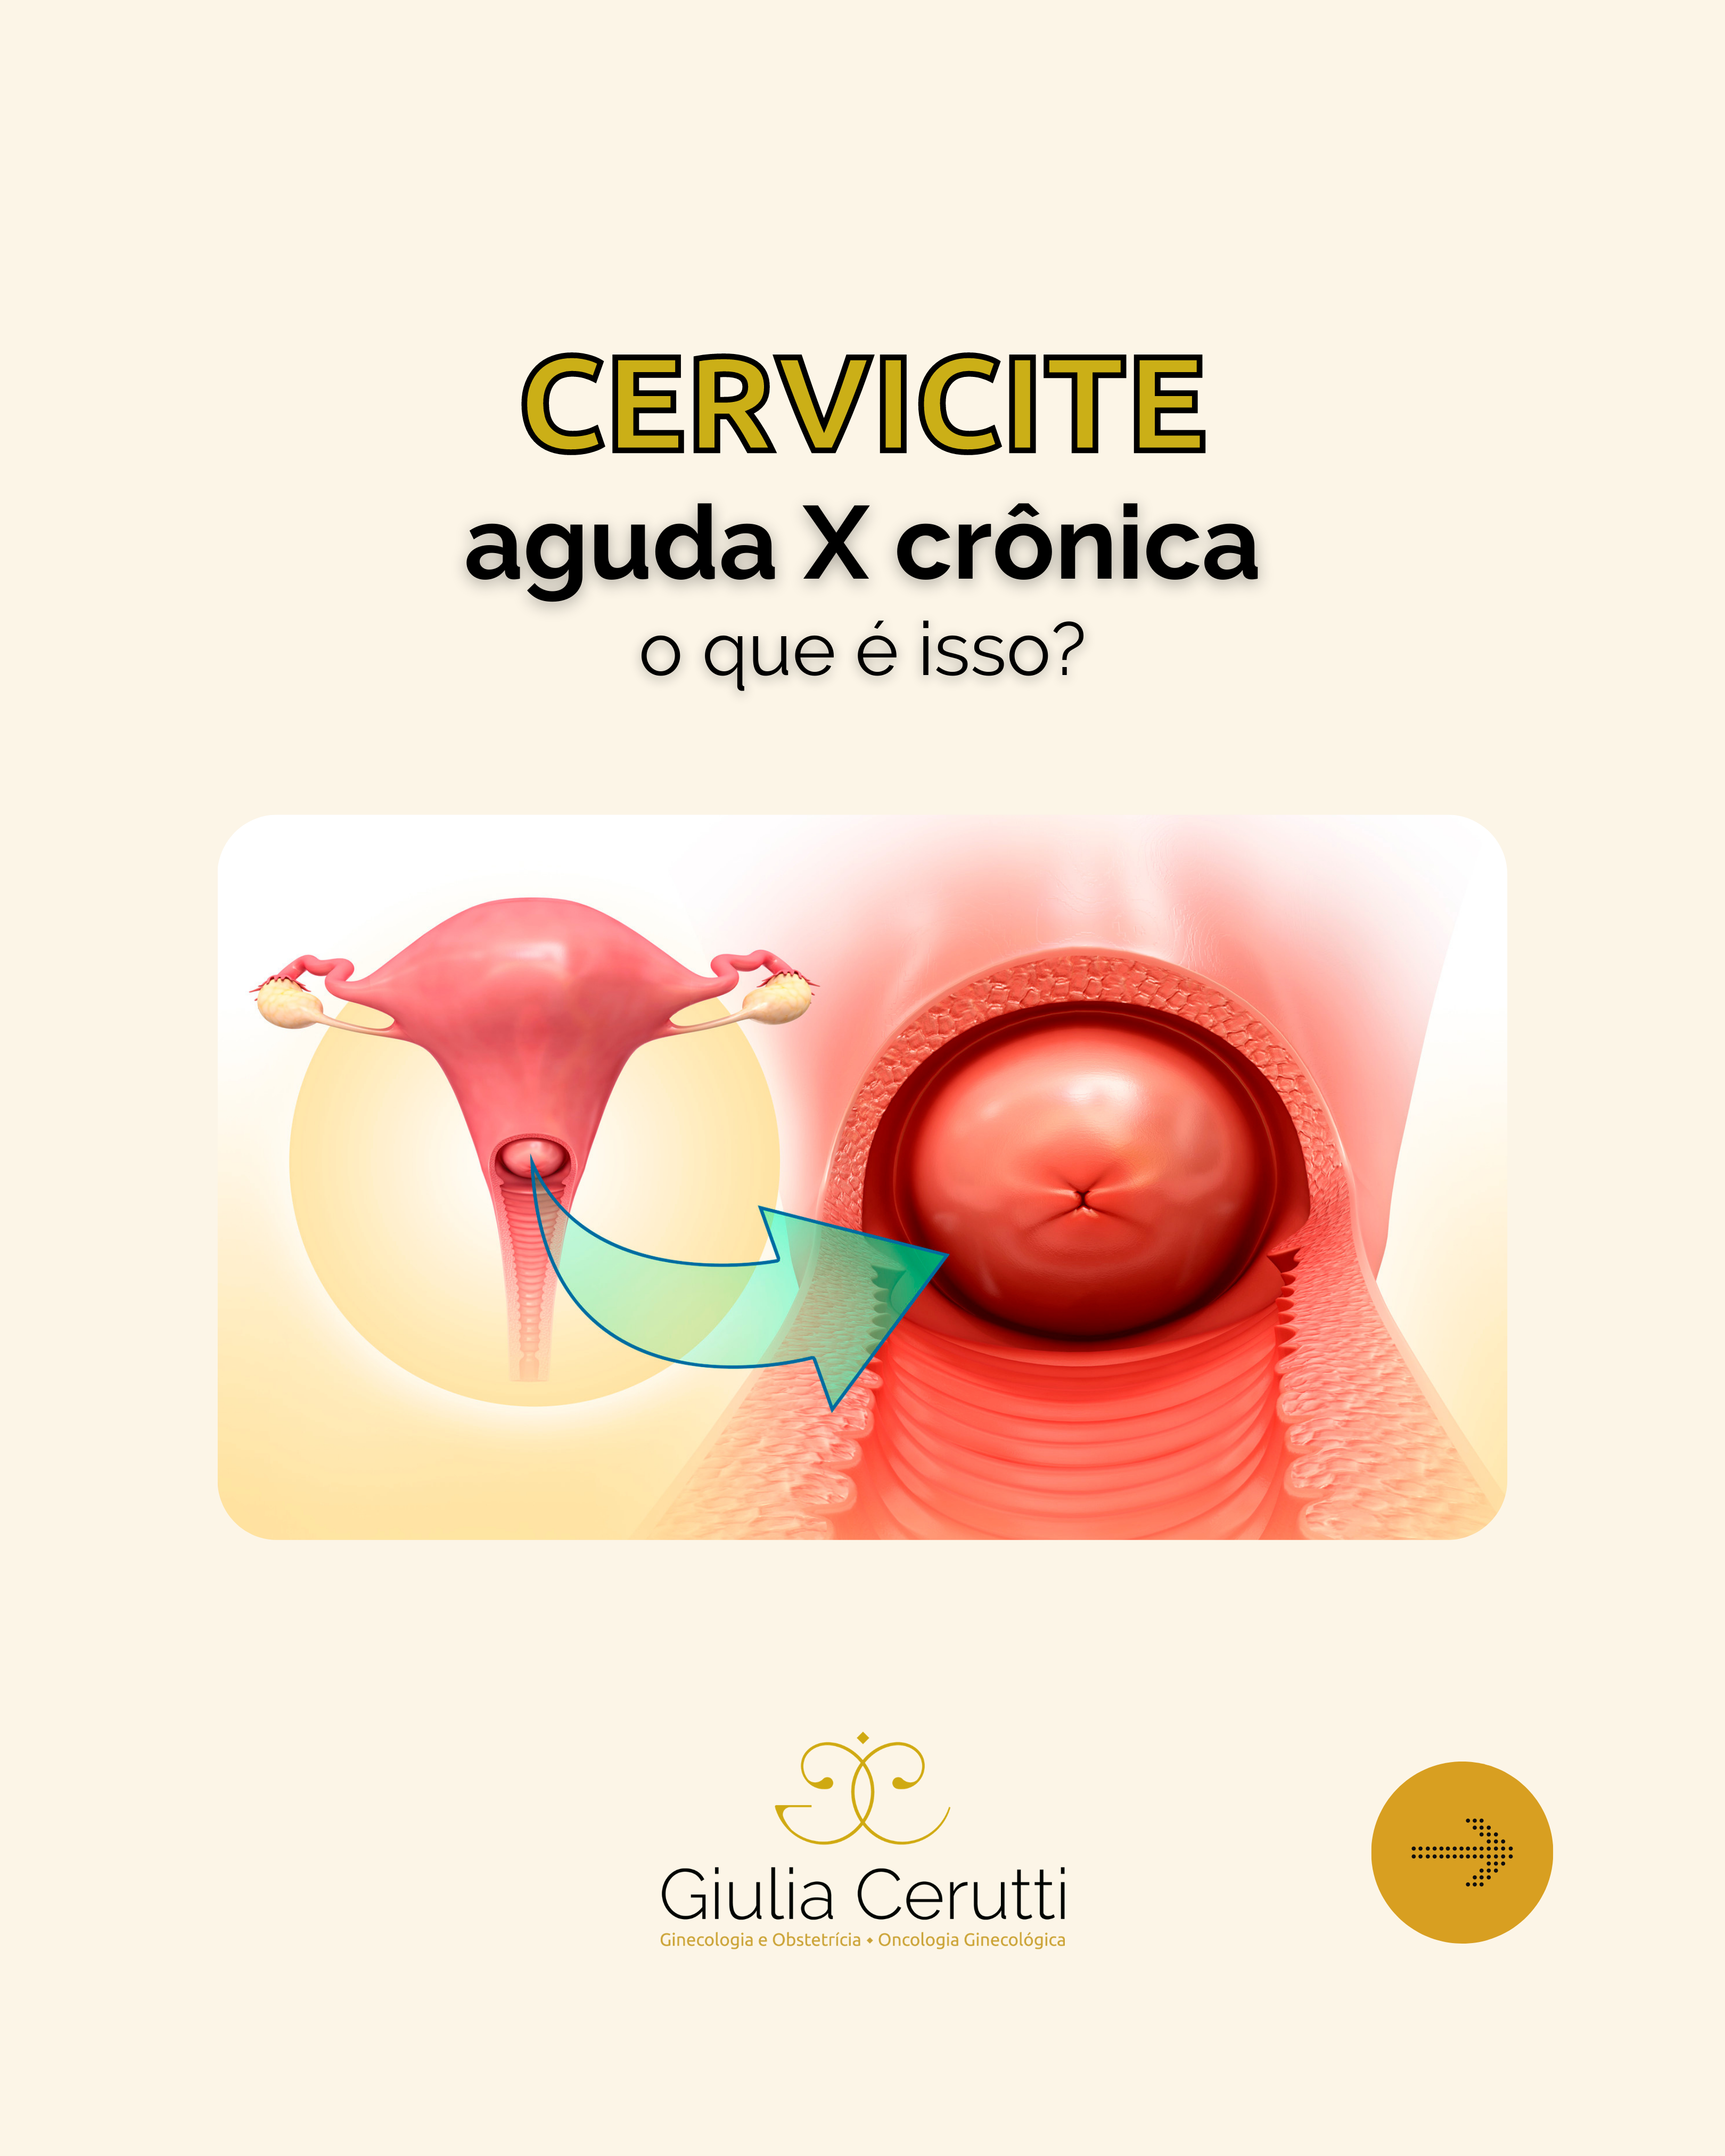 Cirurgia ginecológica - Dra. Giulia Cerutti